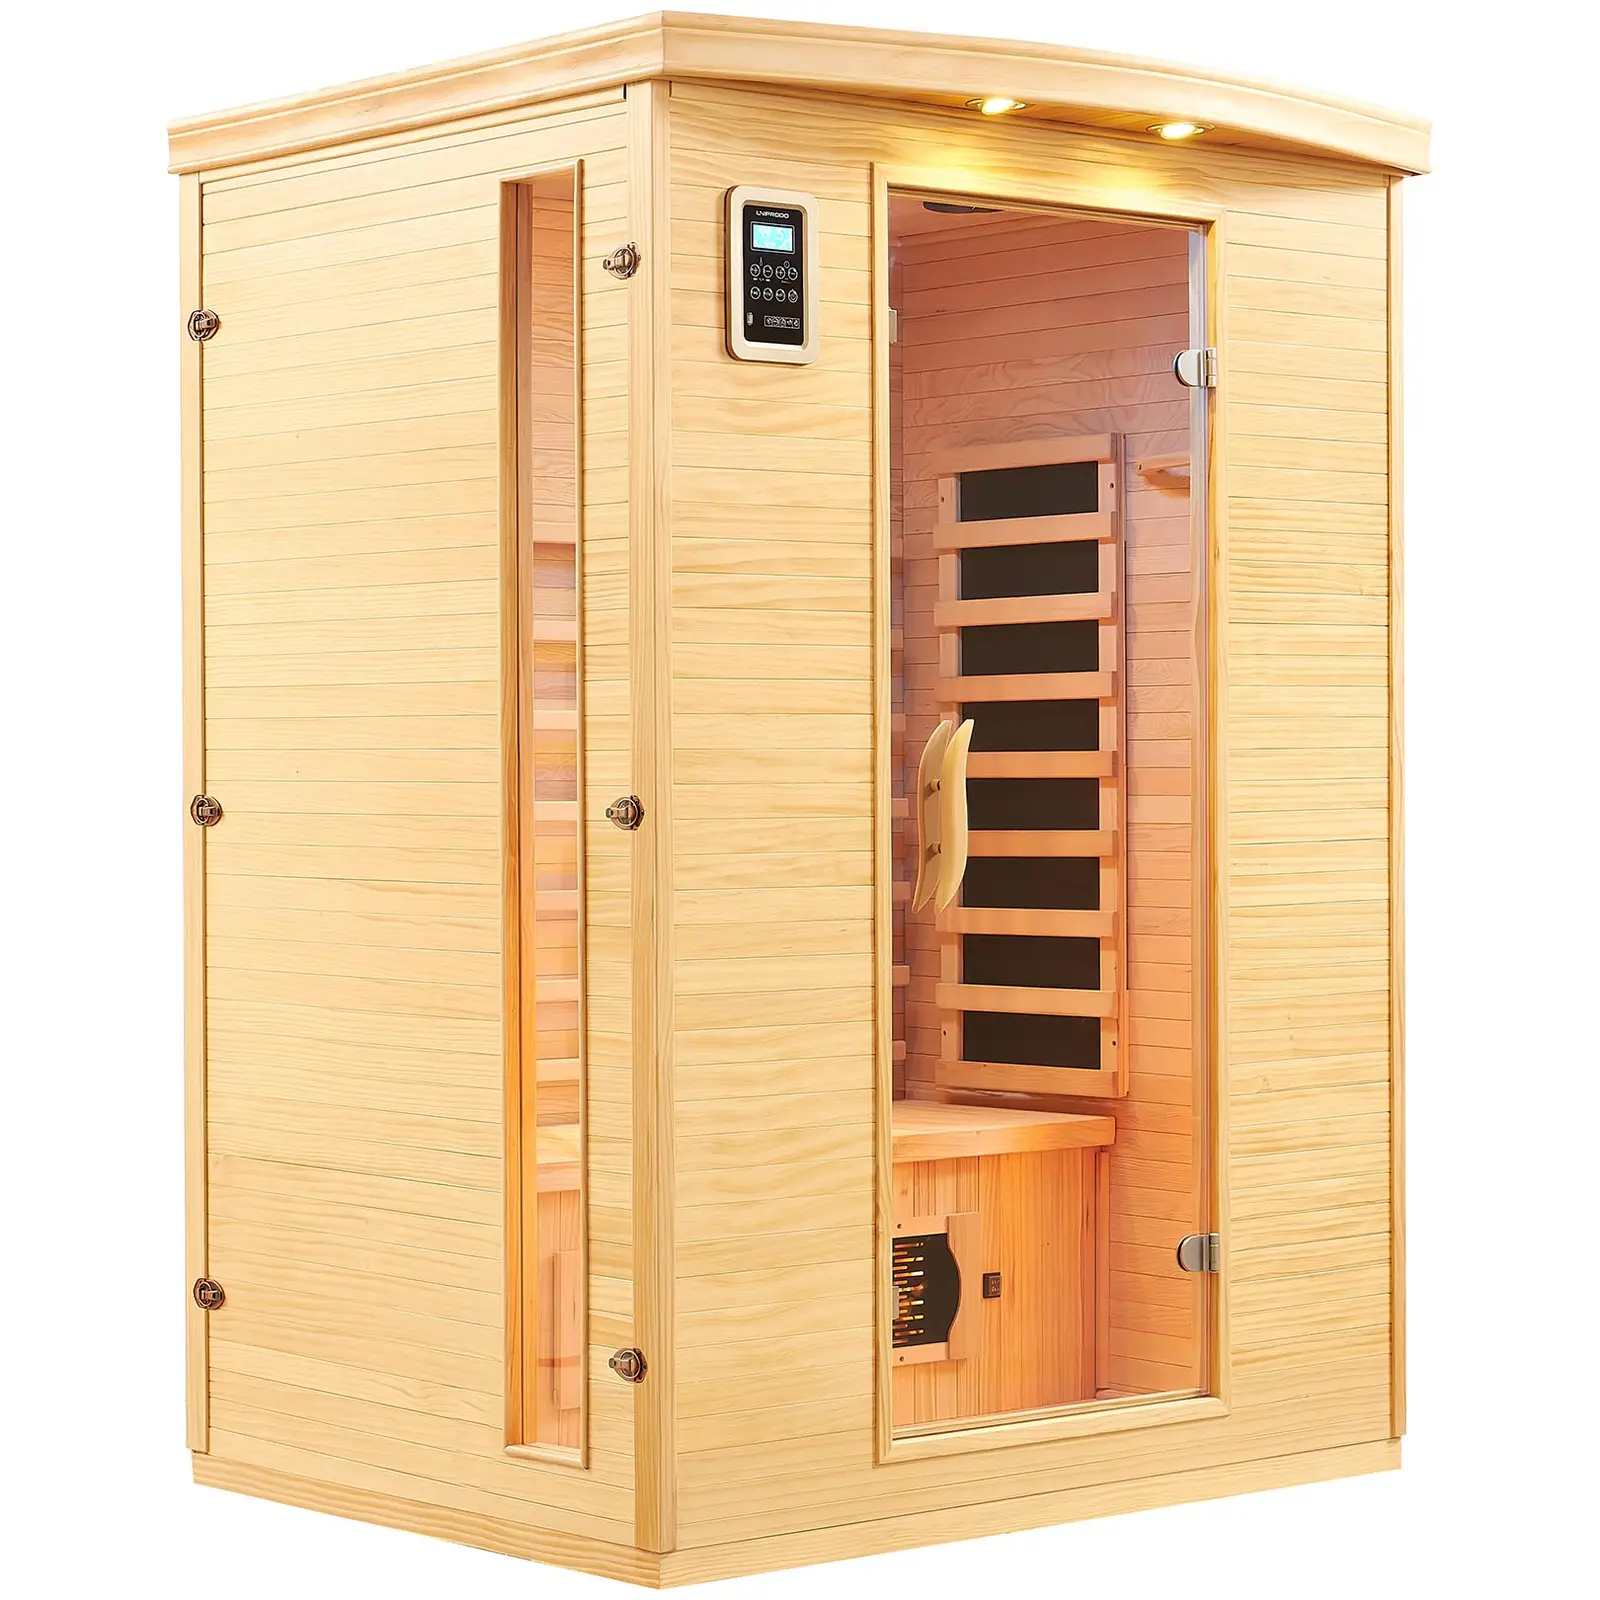 Infrasauna 5 plnospektrálních zářičů 2 osoby 2 100 W 15–65 °C - Doplňky do sauny Uniprodo